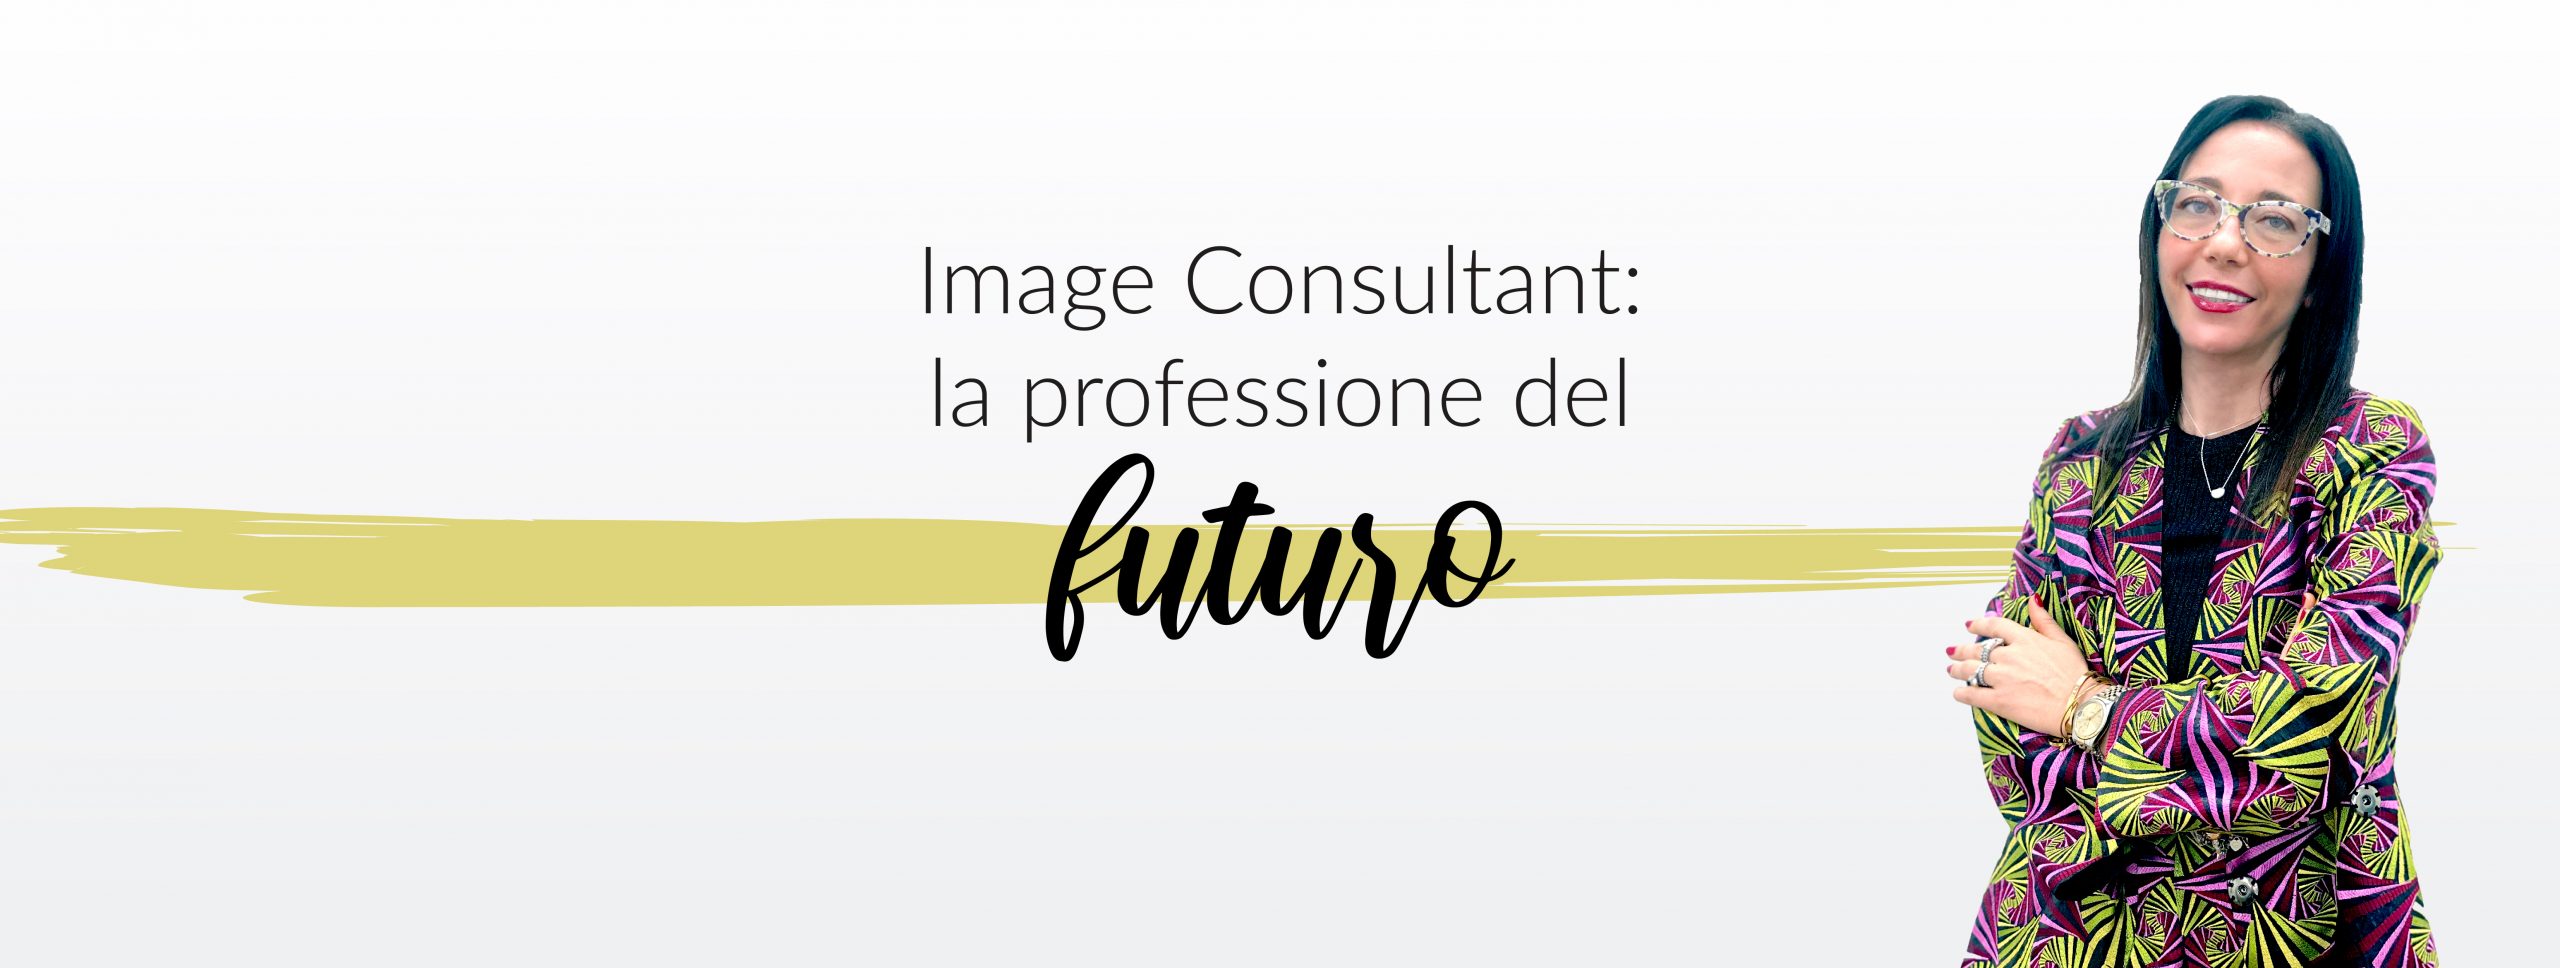 Image consultant